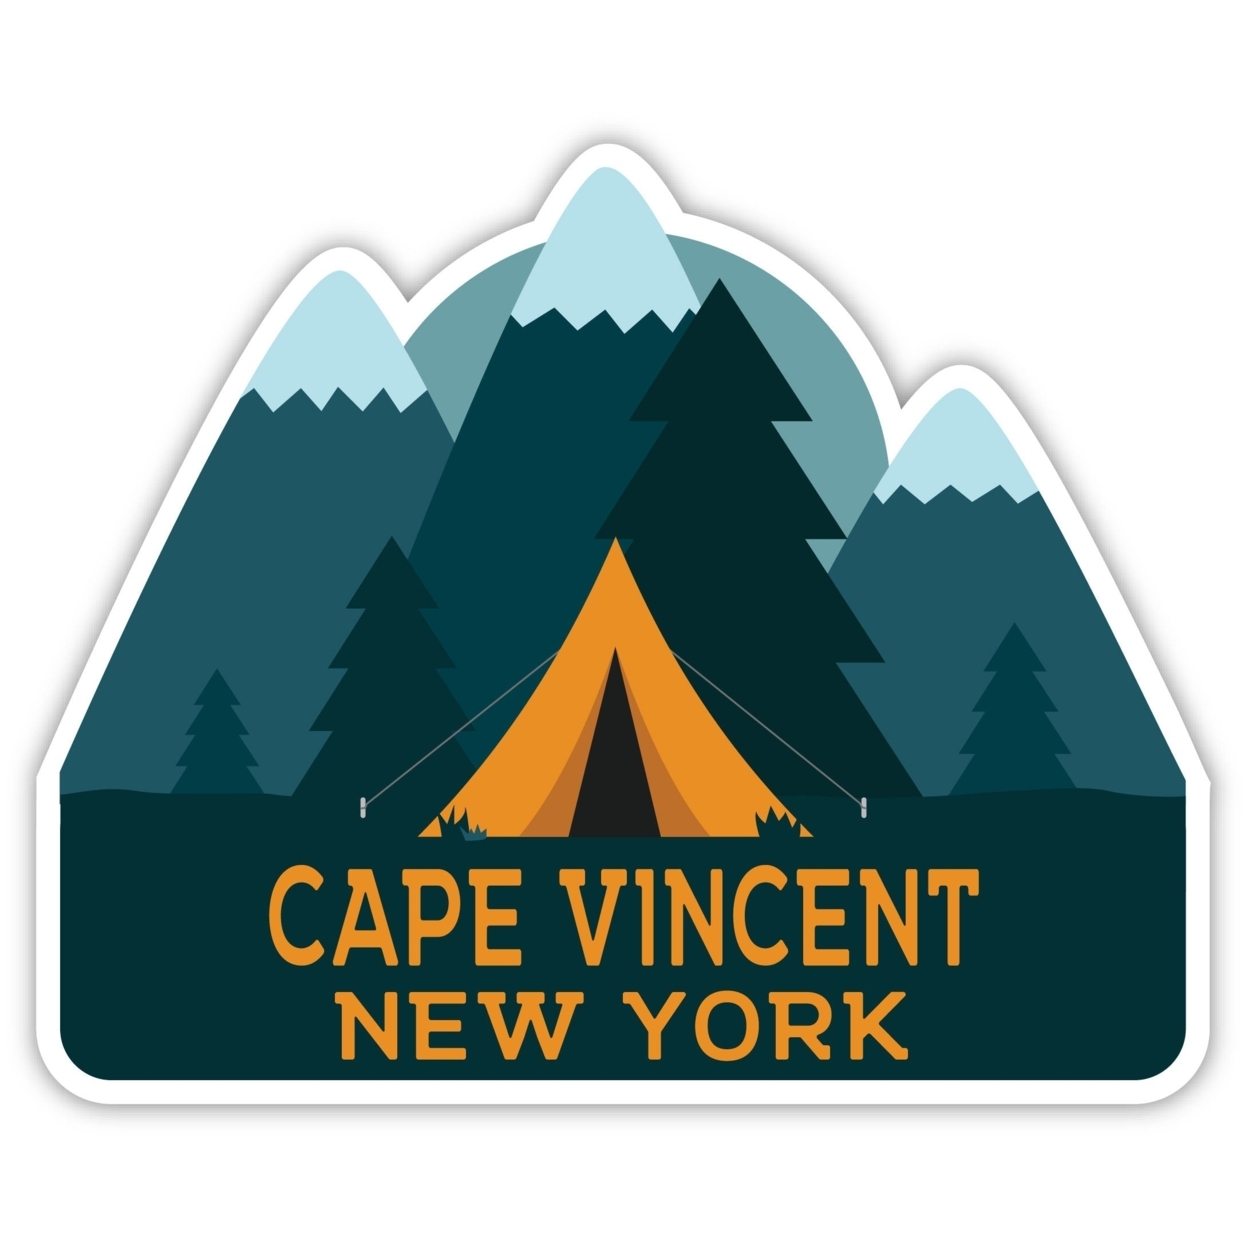 Cape Vincent New York Souvenir Decorative Stickers (Choose Theme And Size) - Single Unit, 4-Inch, Tent